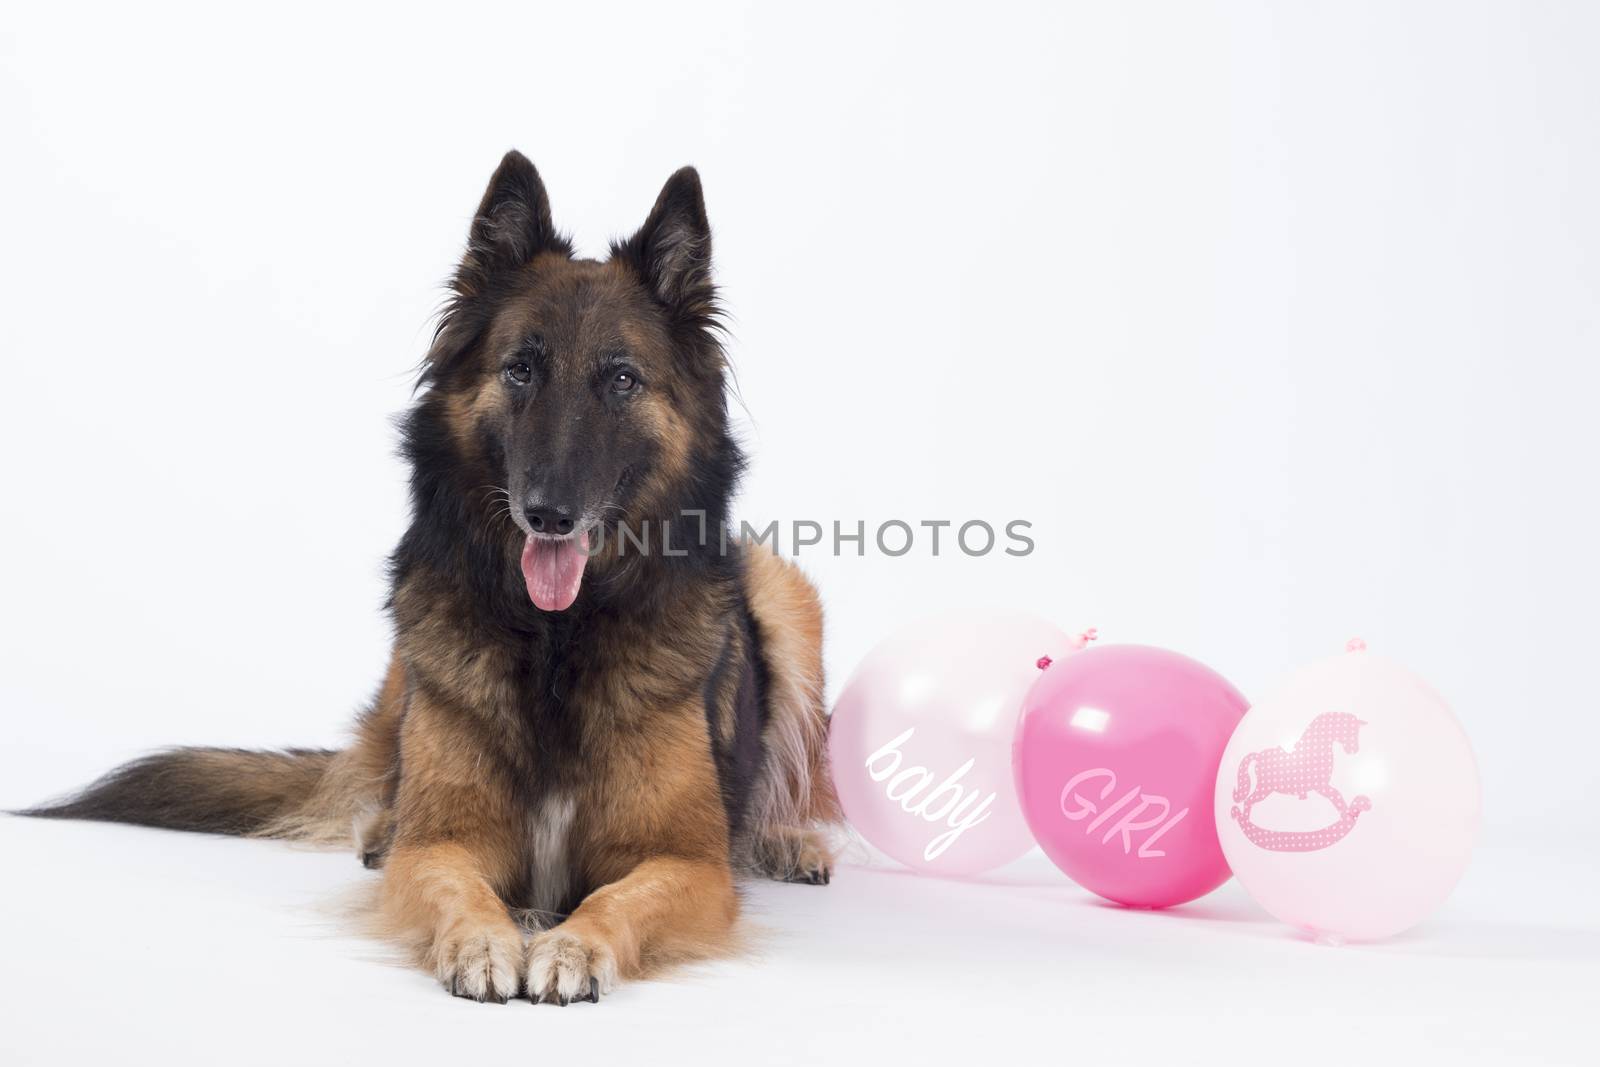 Dog, Belgian shepherd, Tervuren, with pink balloons for a newborn by avanheertum